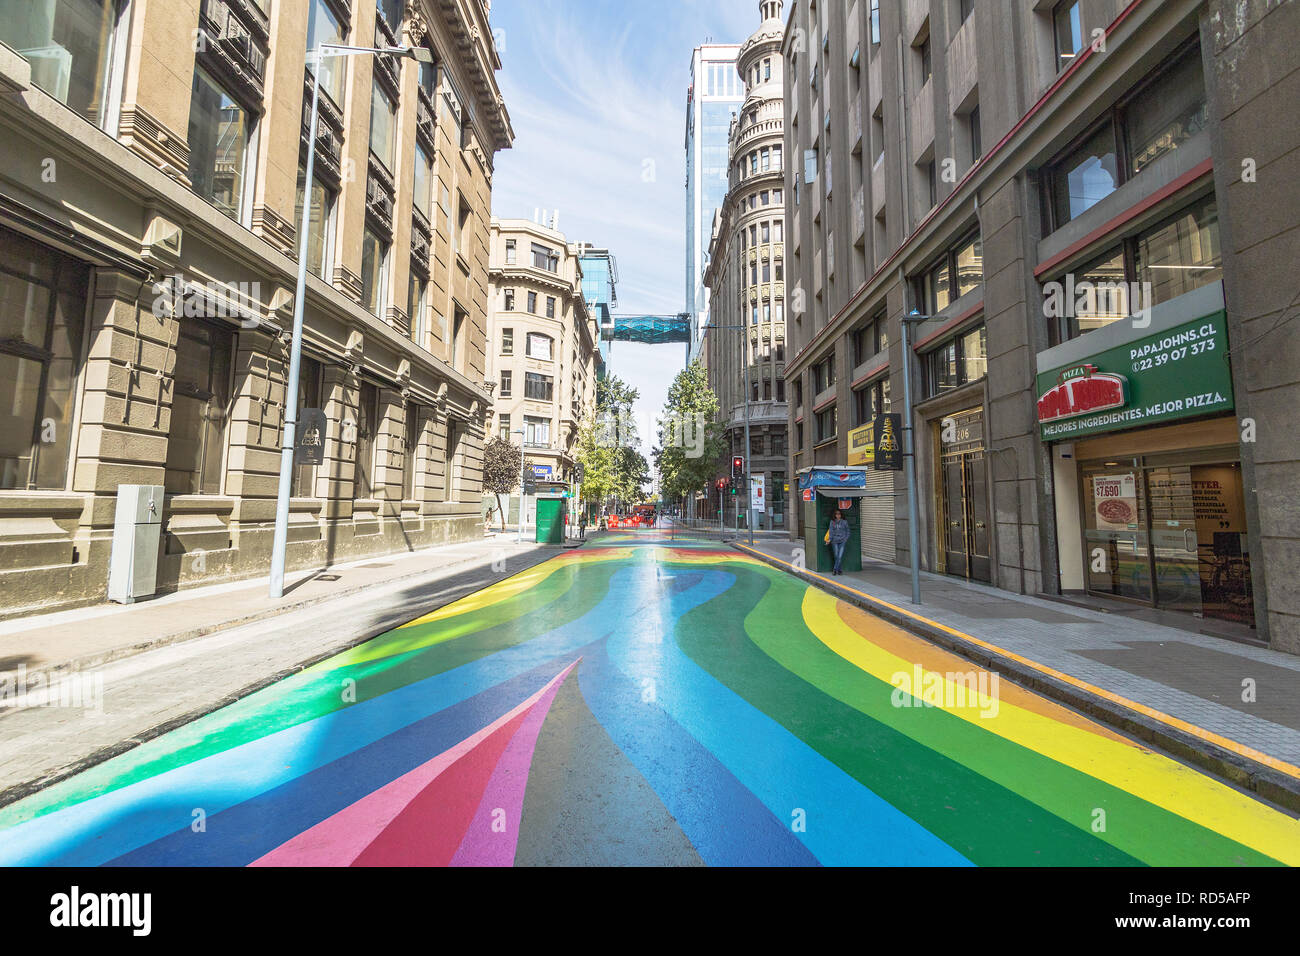 paseo-bandera-colorida-calle-peatonal-en-el-centro-de-la-ciudad-de-santiago-santiago-chile-rd5afp.jpg